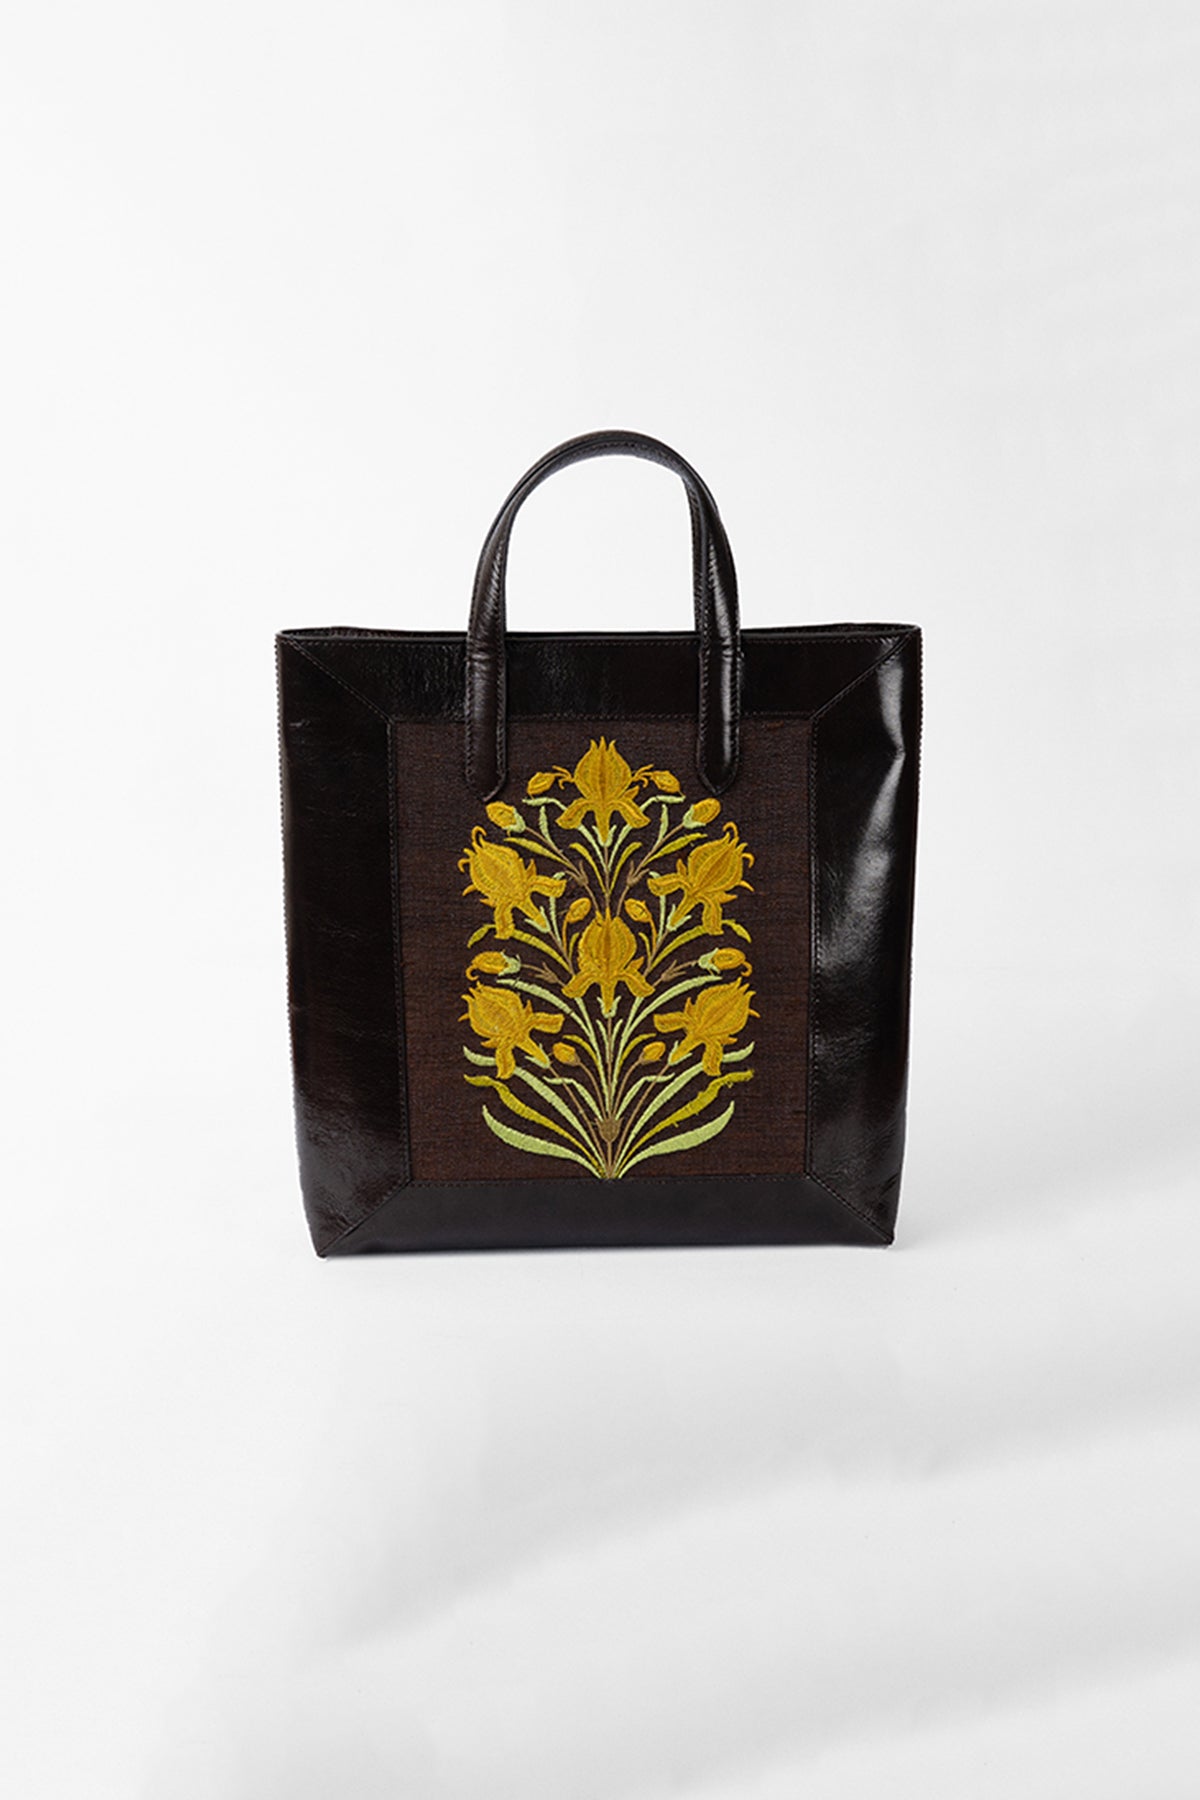 Tuberose-Chocolate Leather Tote Bag